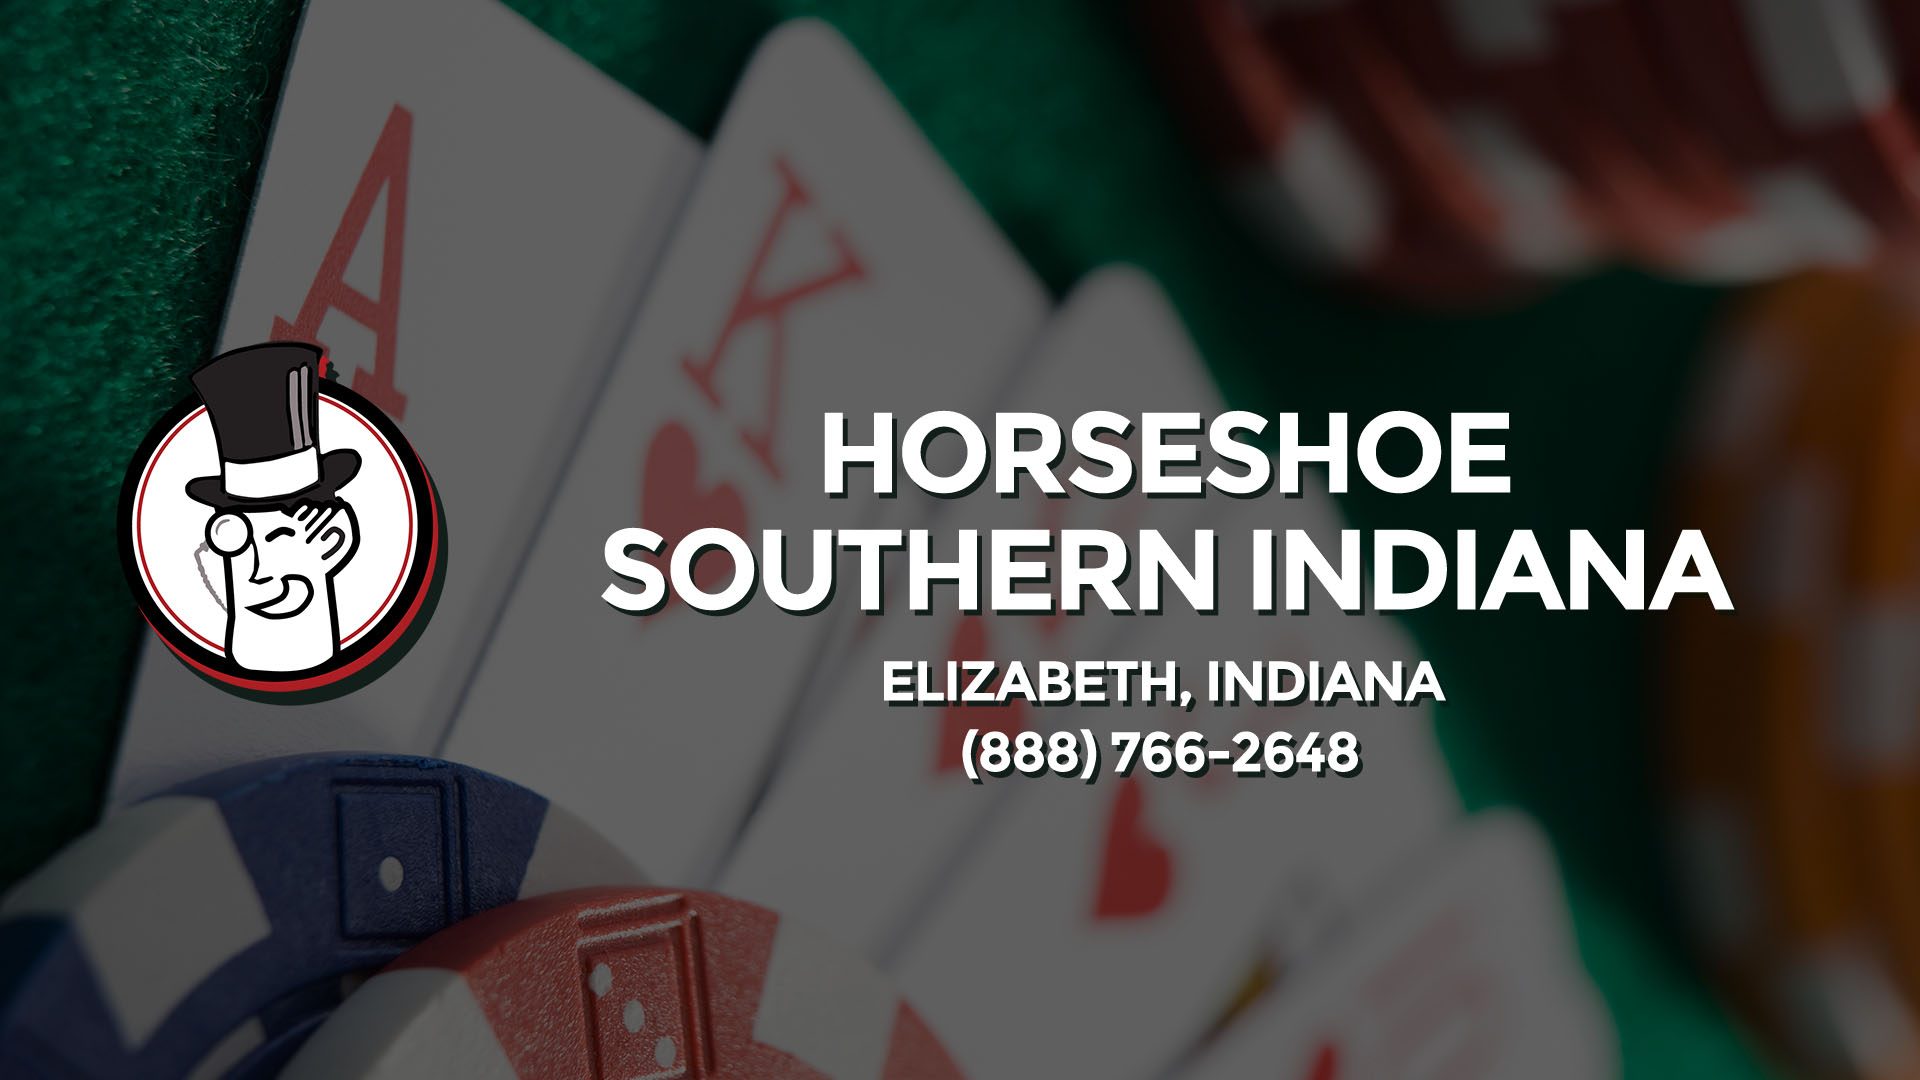 horseshoe casino elizabeth indiana shuttle bus sdf